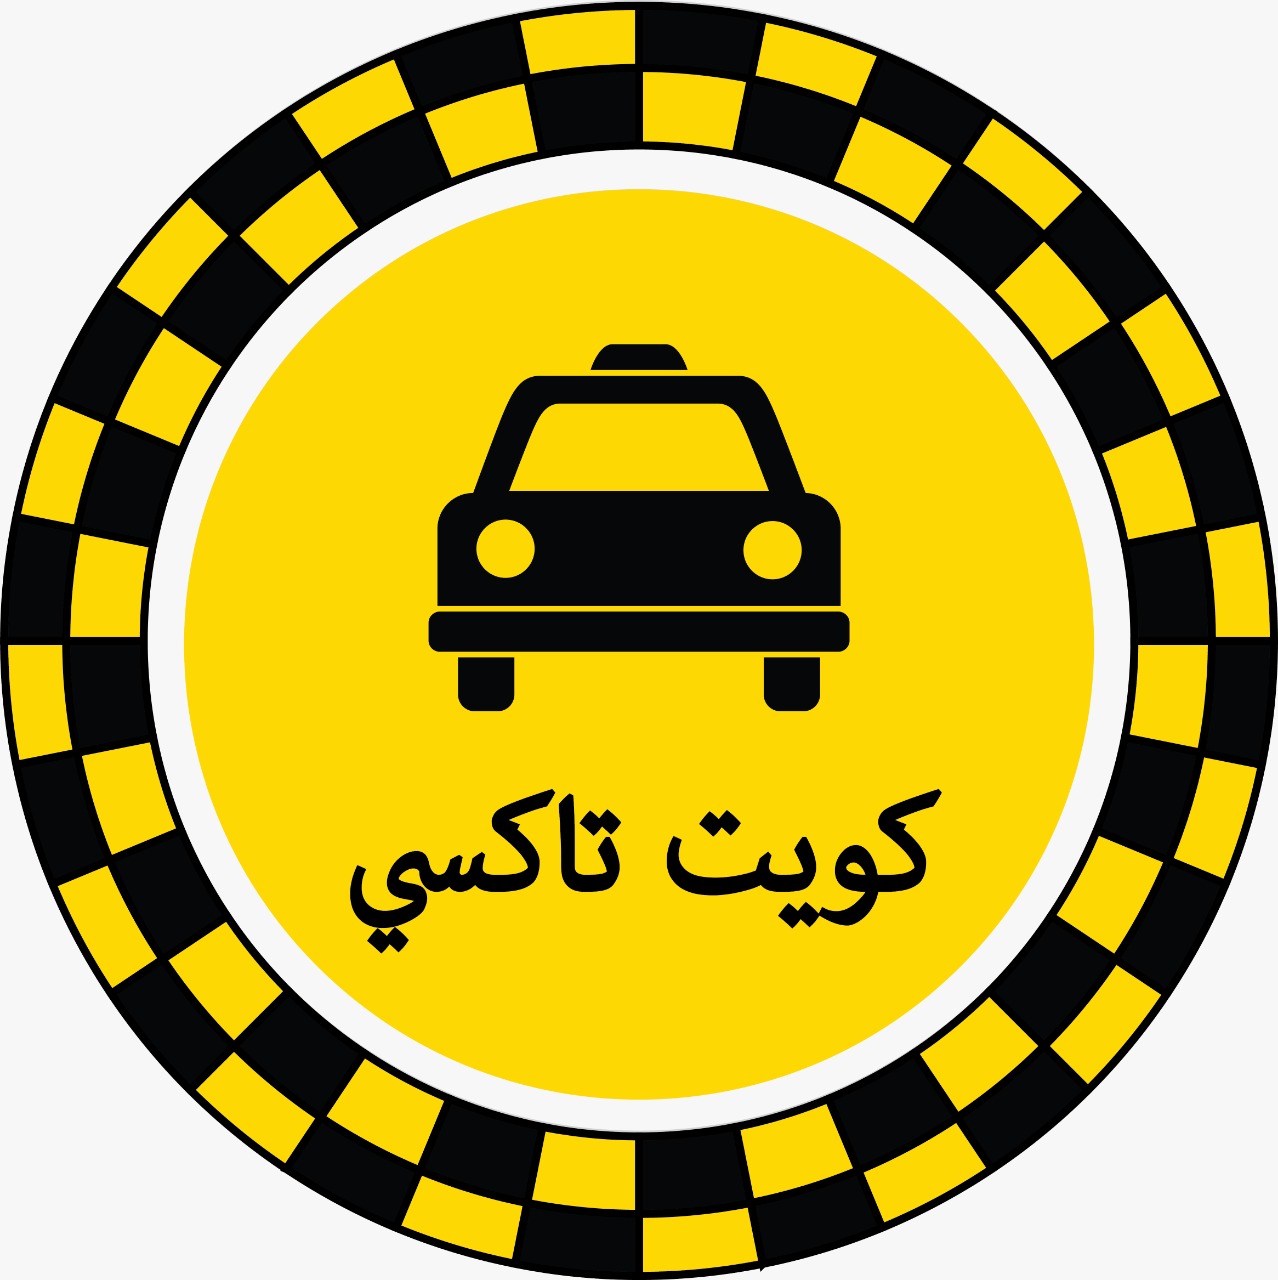 رقم تاكسي مبارك الكبير - تاكسي مبارك الكبير كويت